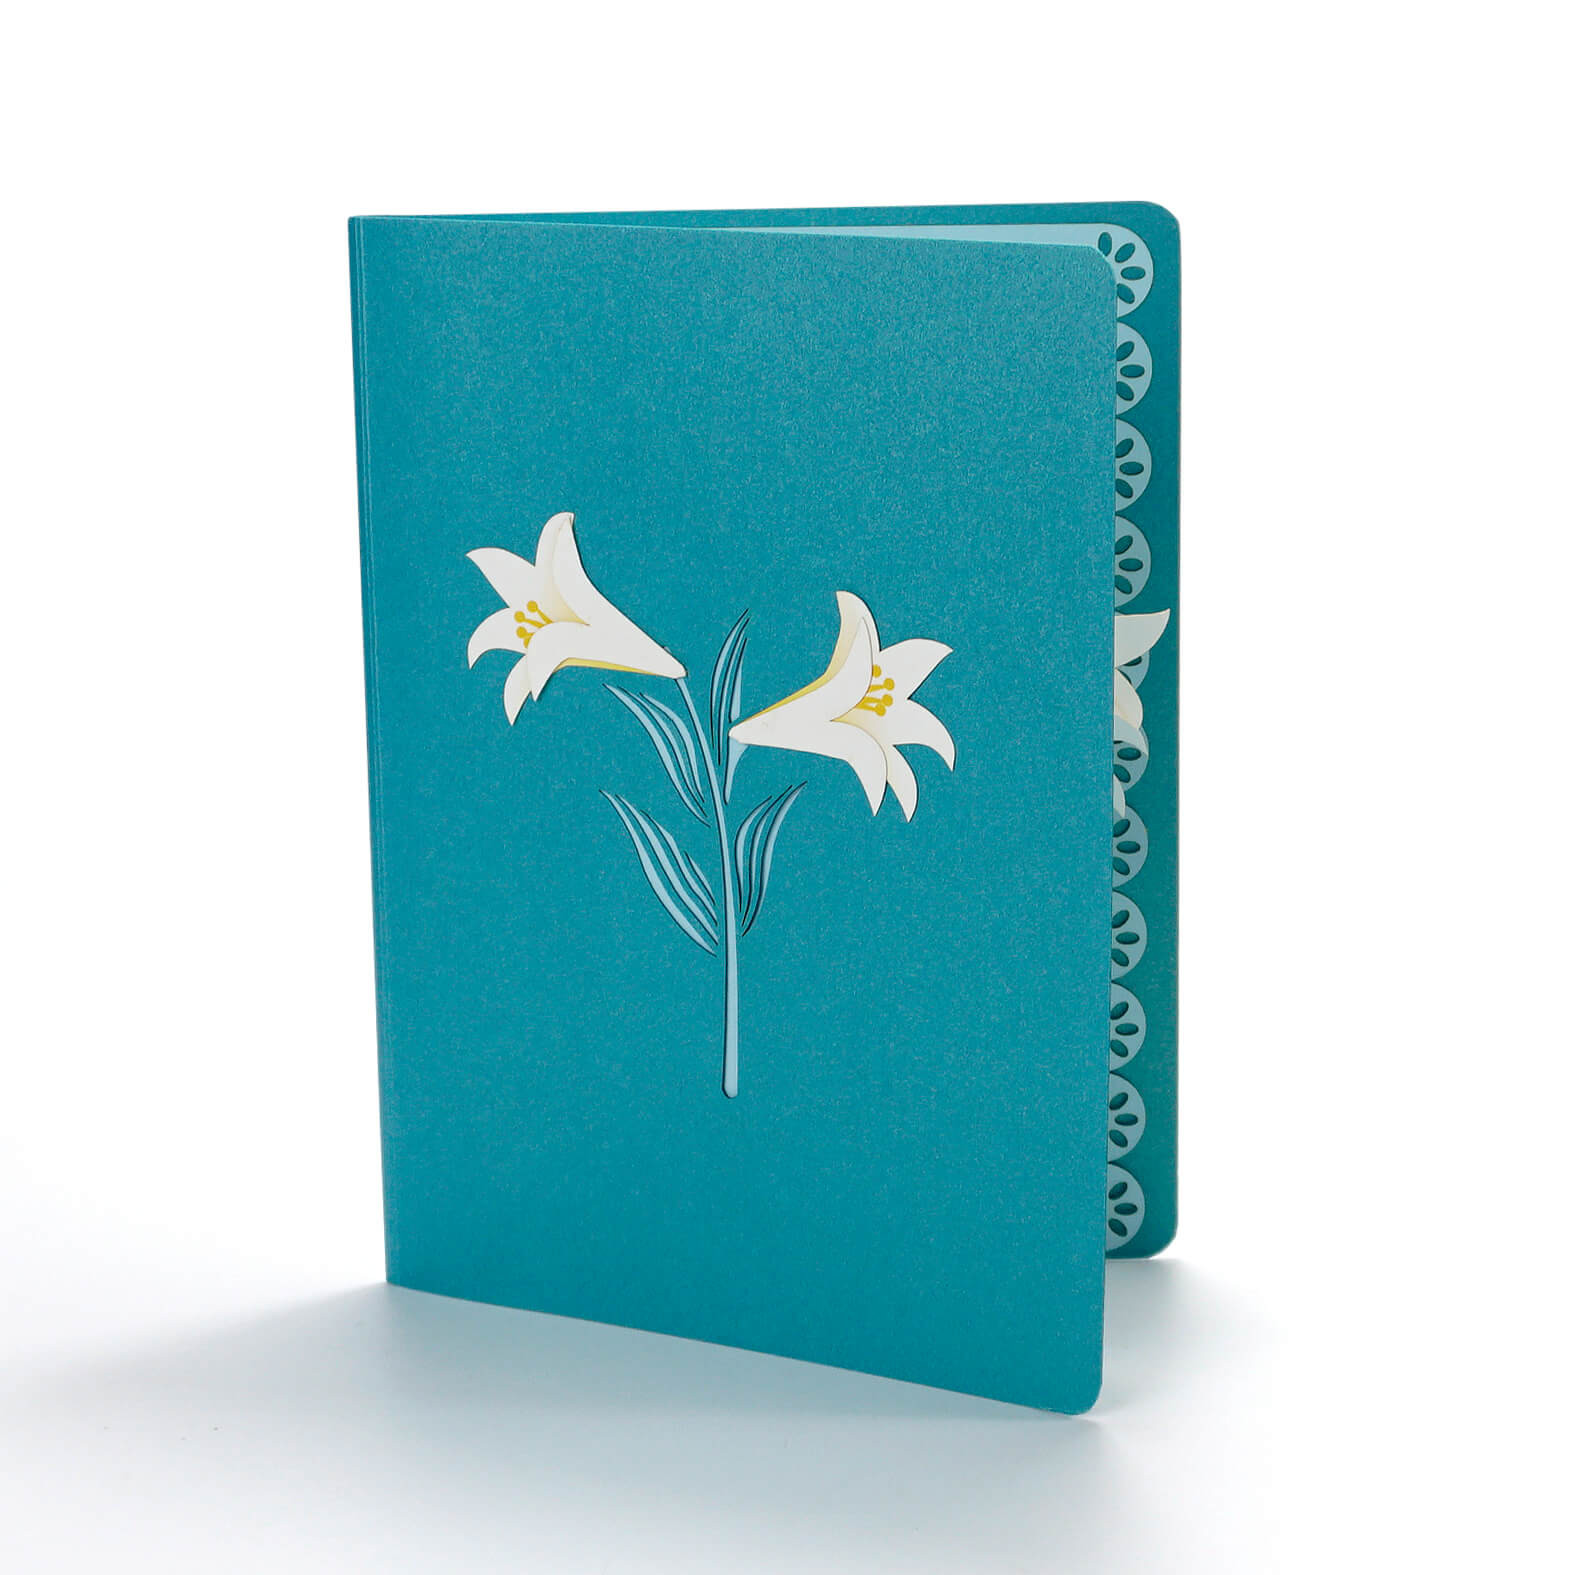 Lily Flower Bouquet Handmade Pop Up Card - Blue Version